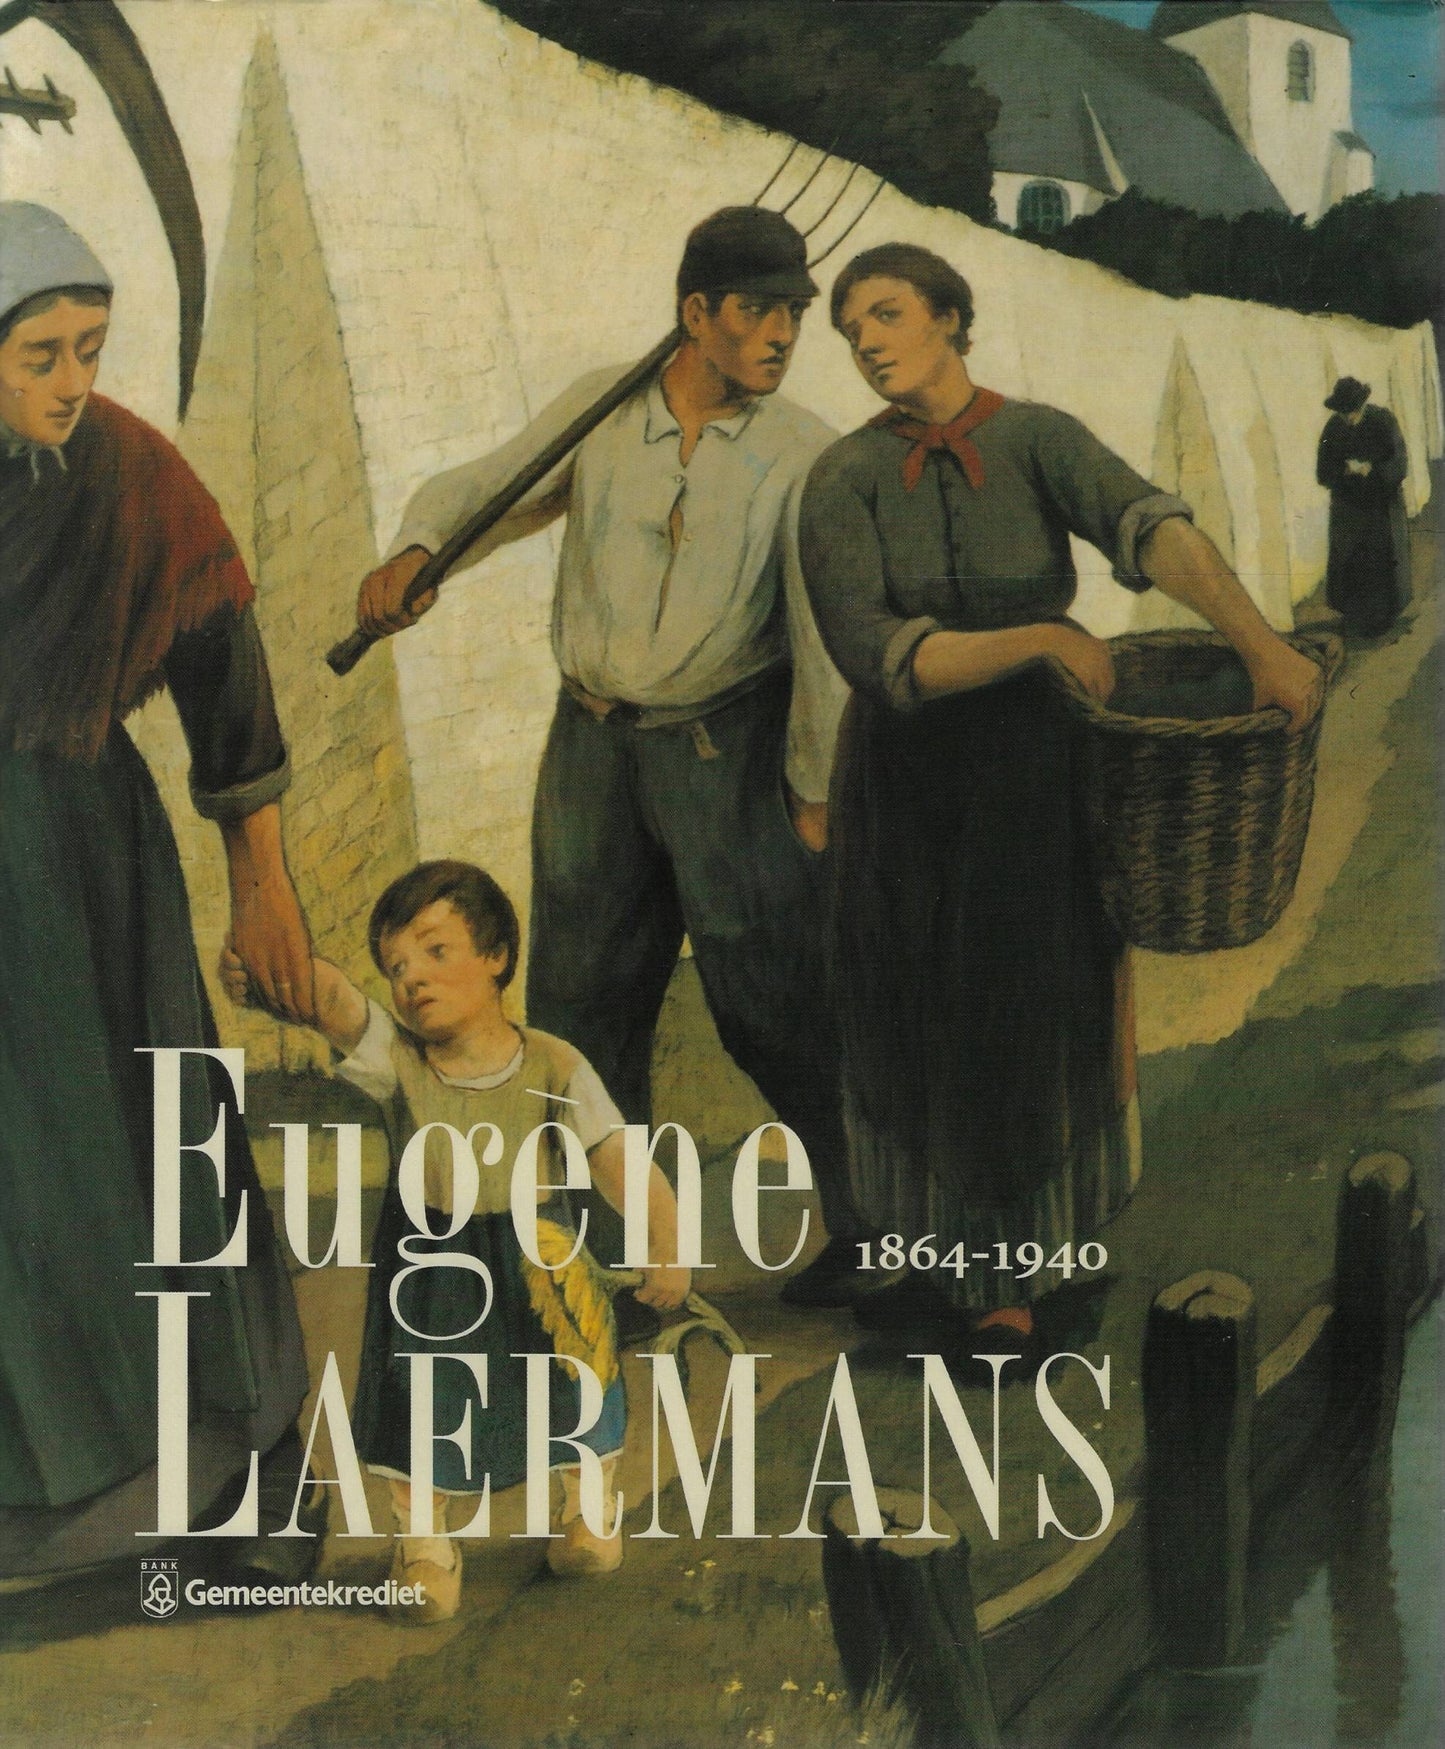 Eugene laermans (1864-1940)